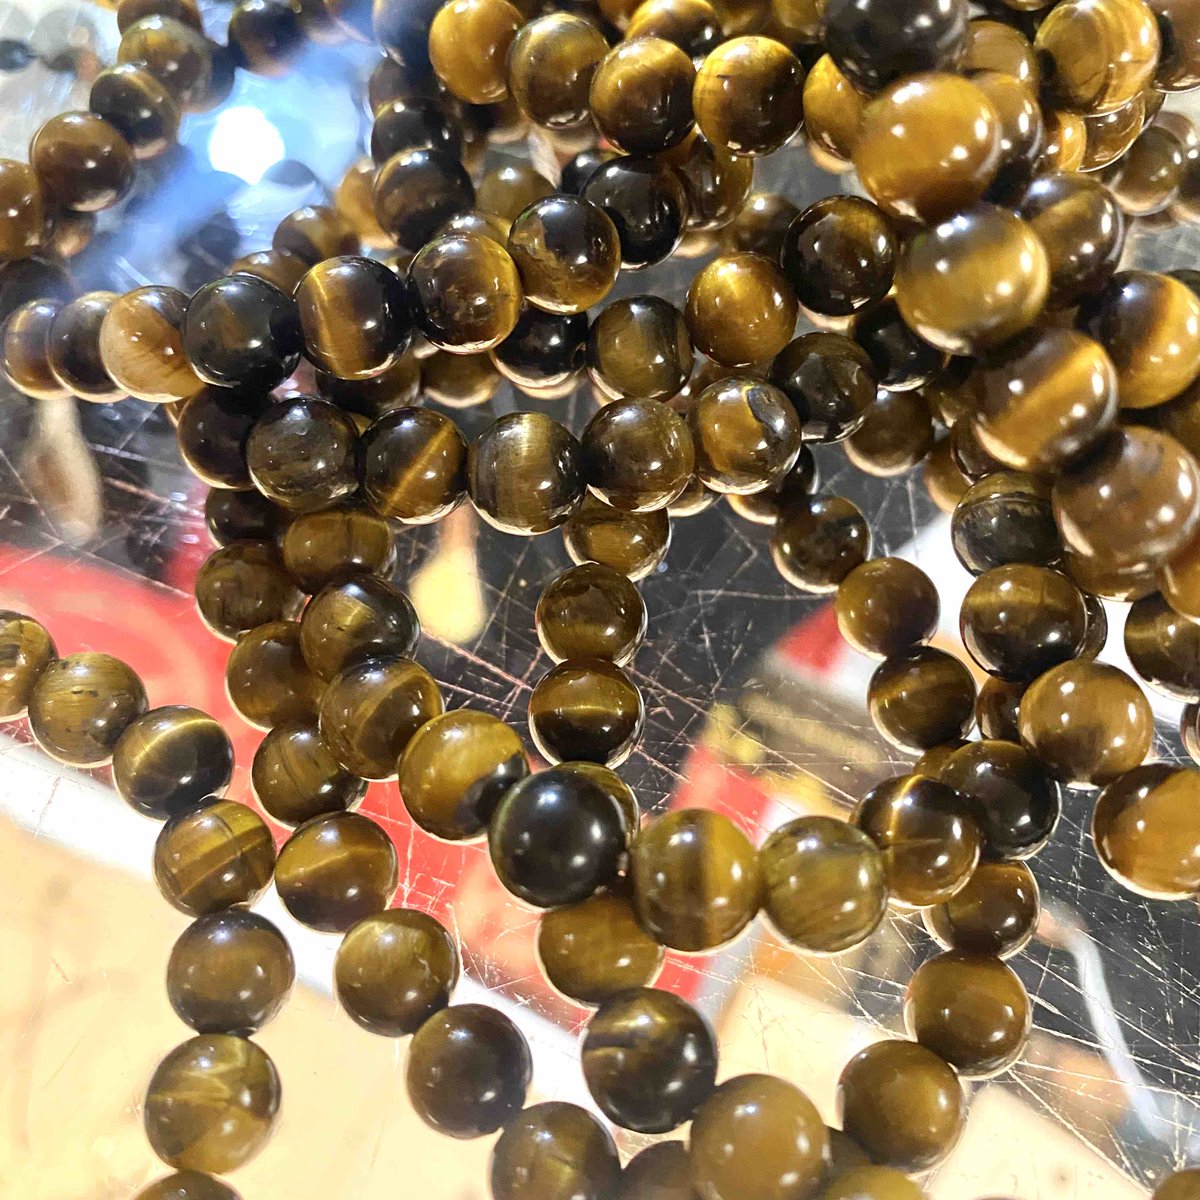 New stock alert: More Tiger's Eye bracelets have just arrived!
#TigersEye #Gemstones #Crystals #CrystalBracelet #GemstoneBracelet #SpiritualJewelry #Spirituality